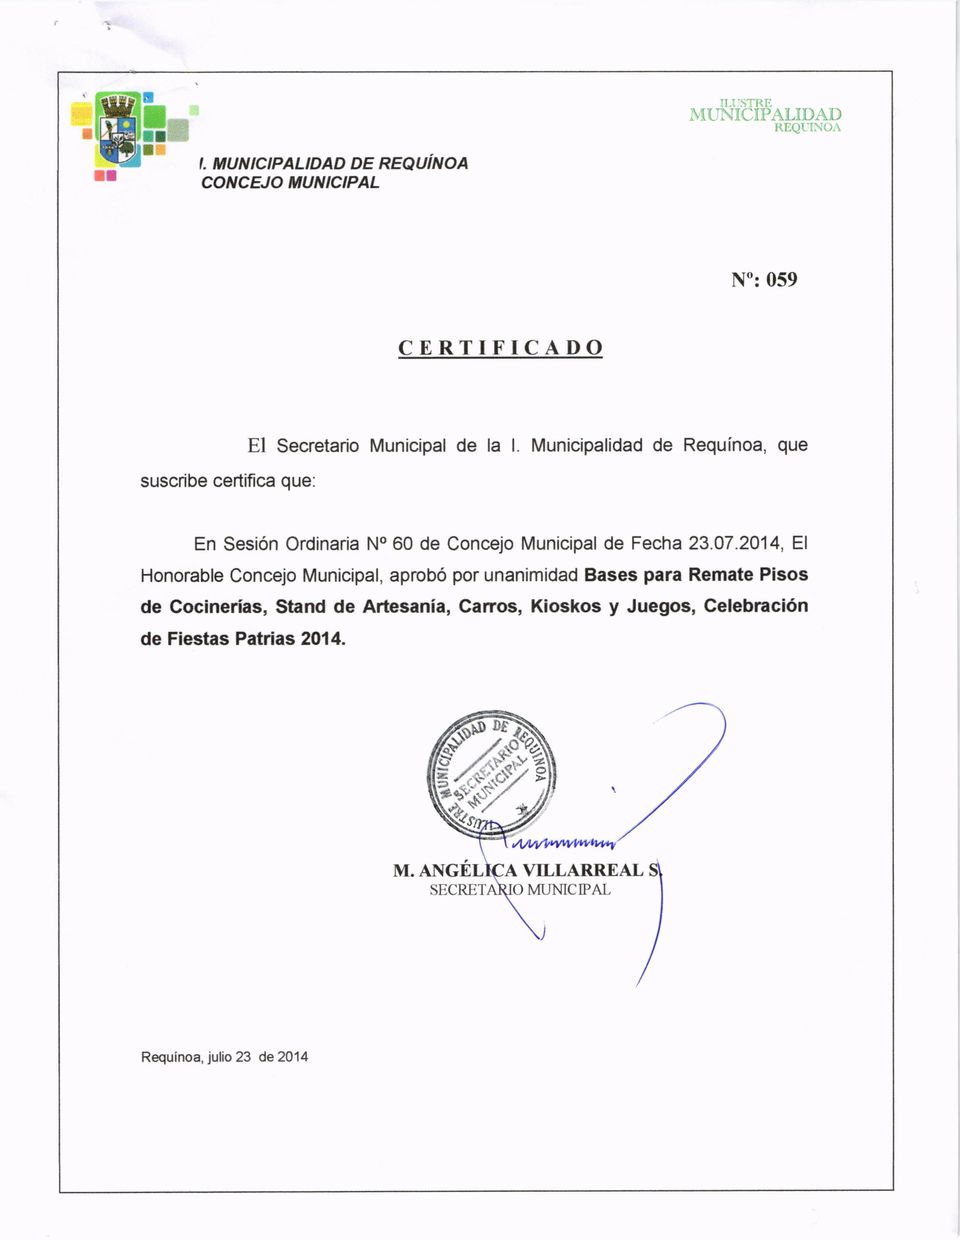 Municipalidad de Requínoa, que En Sesión Ordinaria No 60 de Concejo Municipal de Fecha 23.07.